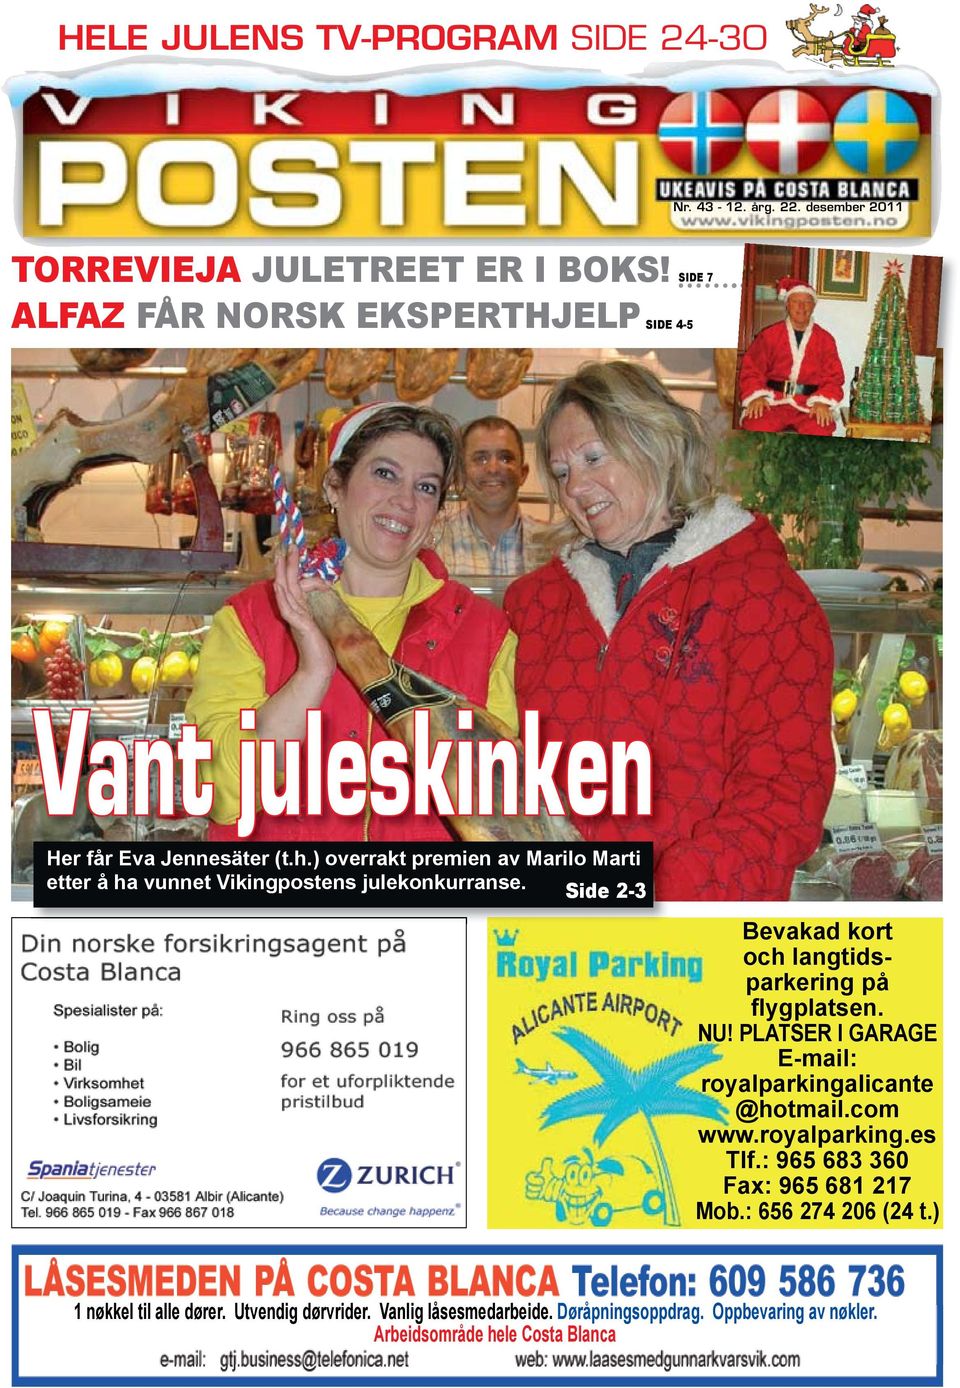 ) overrakt premien av Marilo Marti etter å ha vunnet Vikingpostens julekonkurranse. Side 2-3 Bevakad kort och langtidsparkering på flygplatsen. NU!